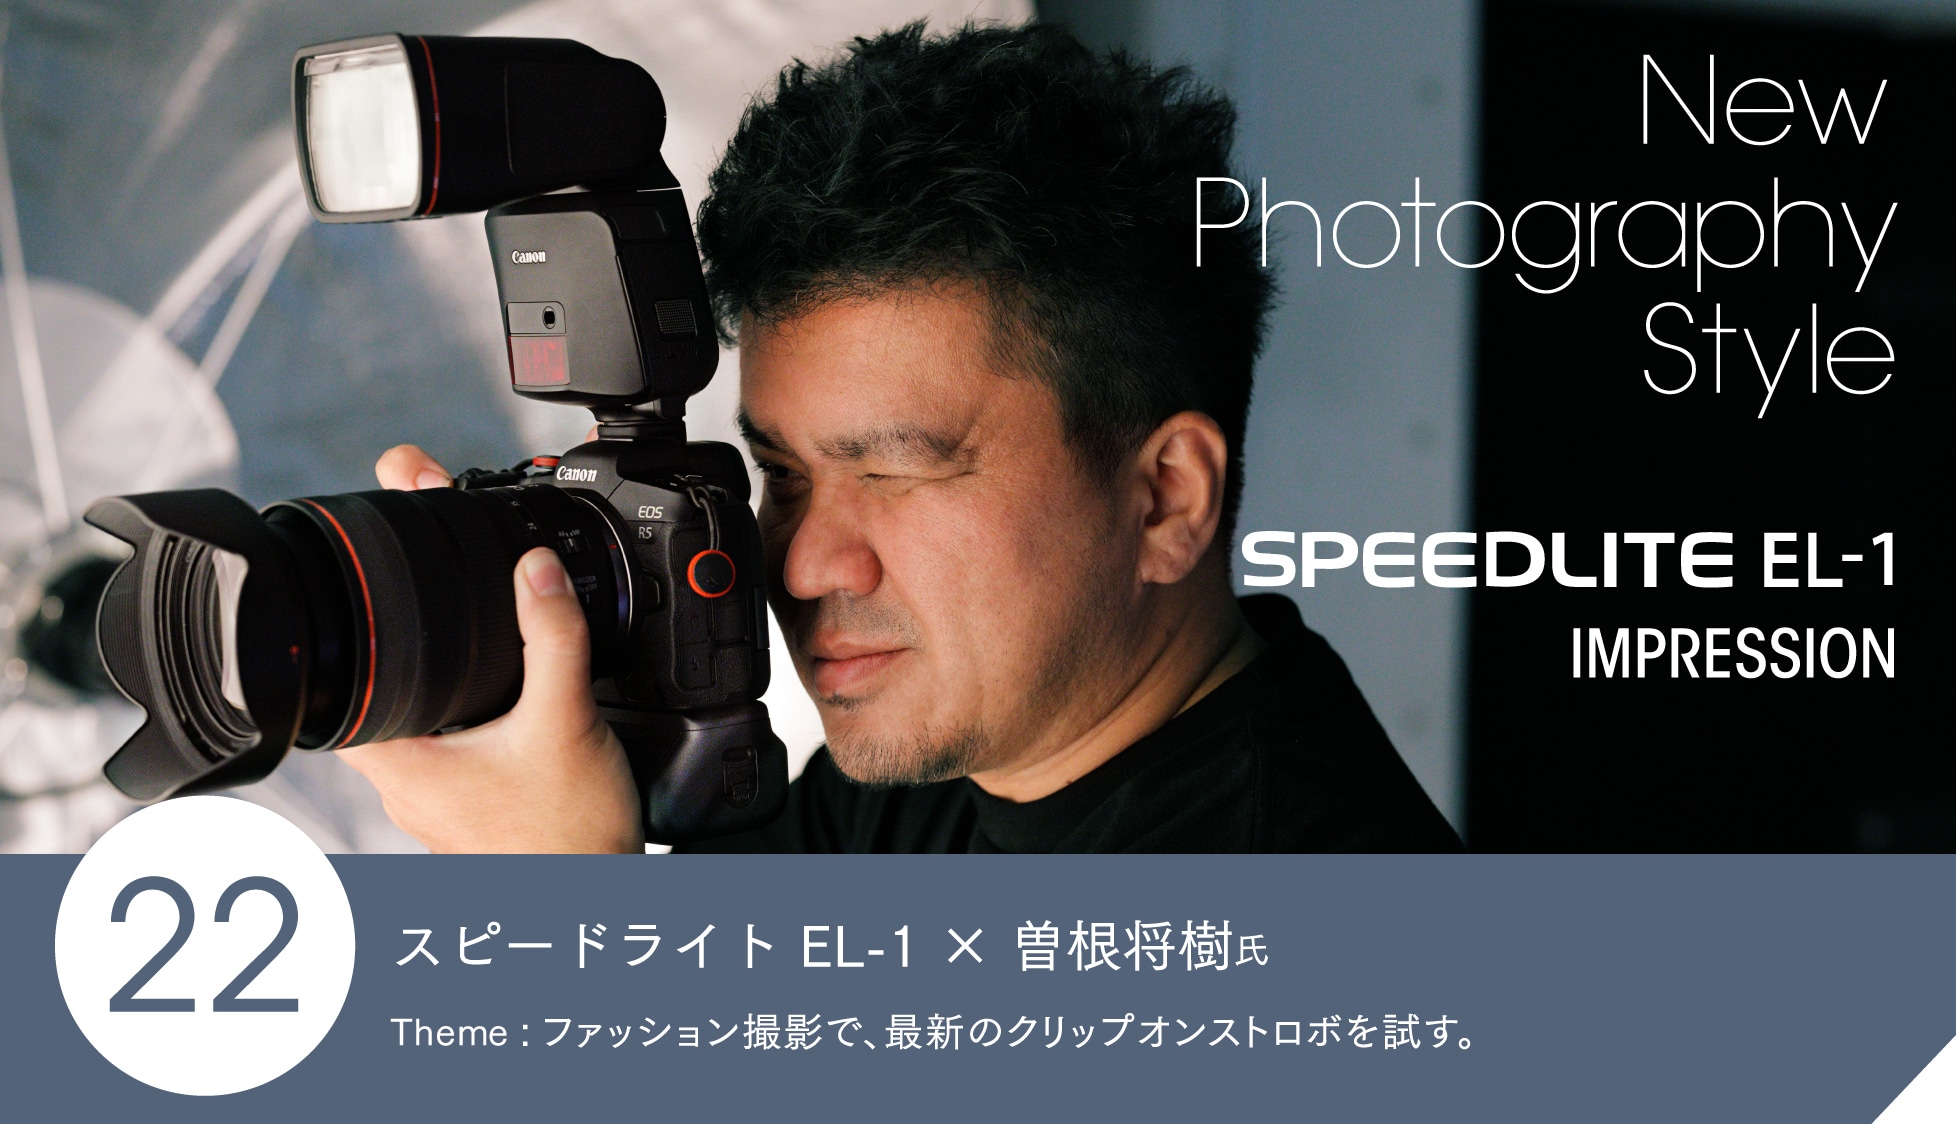 スピードライト EL-1 × 曽根将樹氏　Theme： ファッション撮影で、最新のクリップオンストロボを試す。